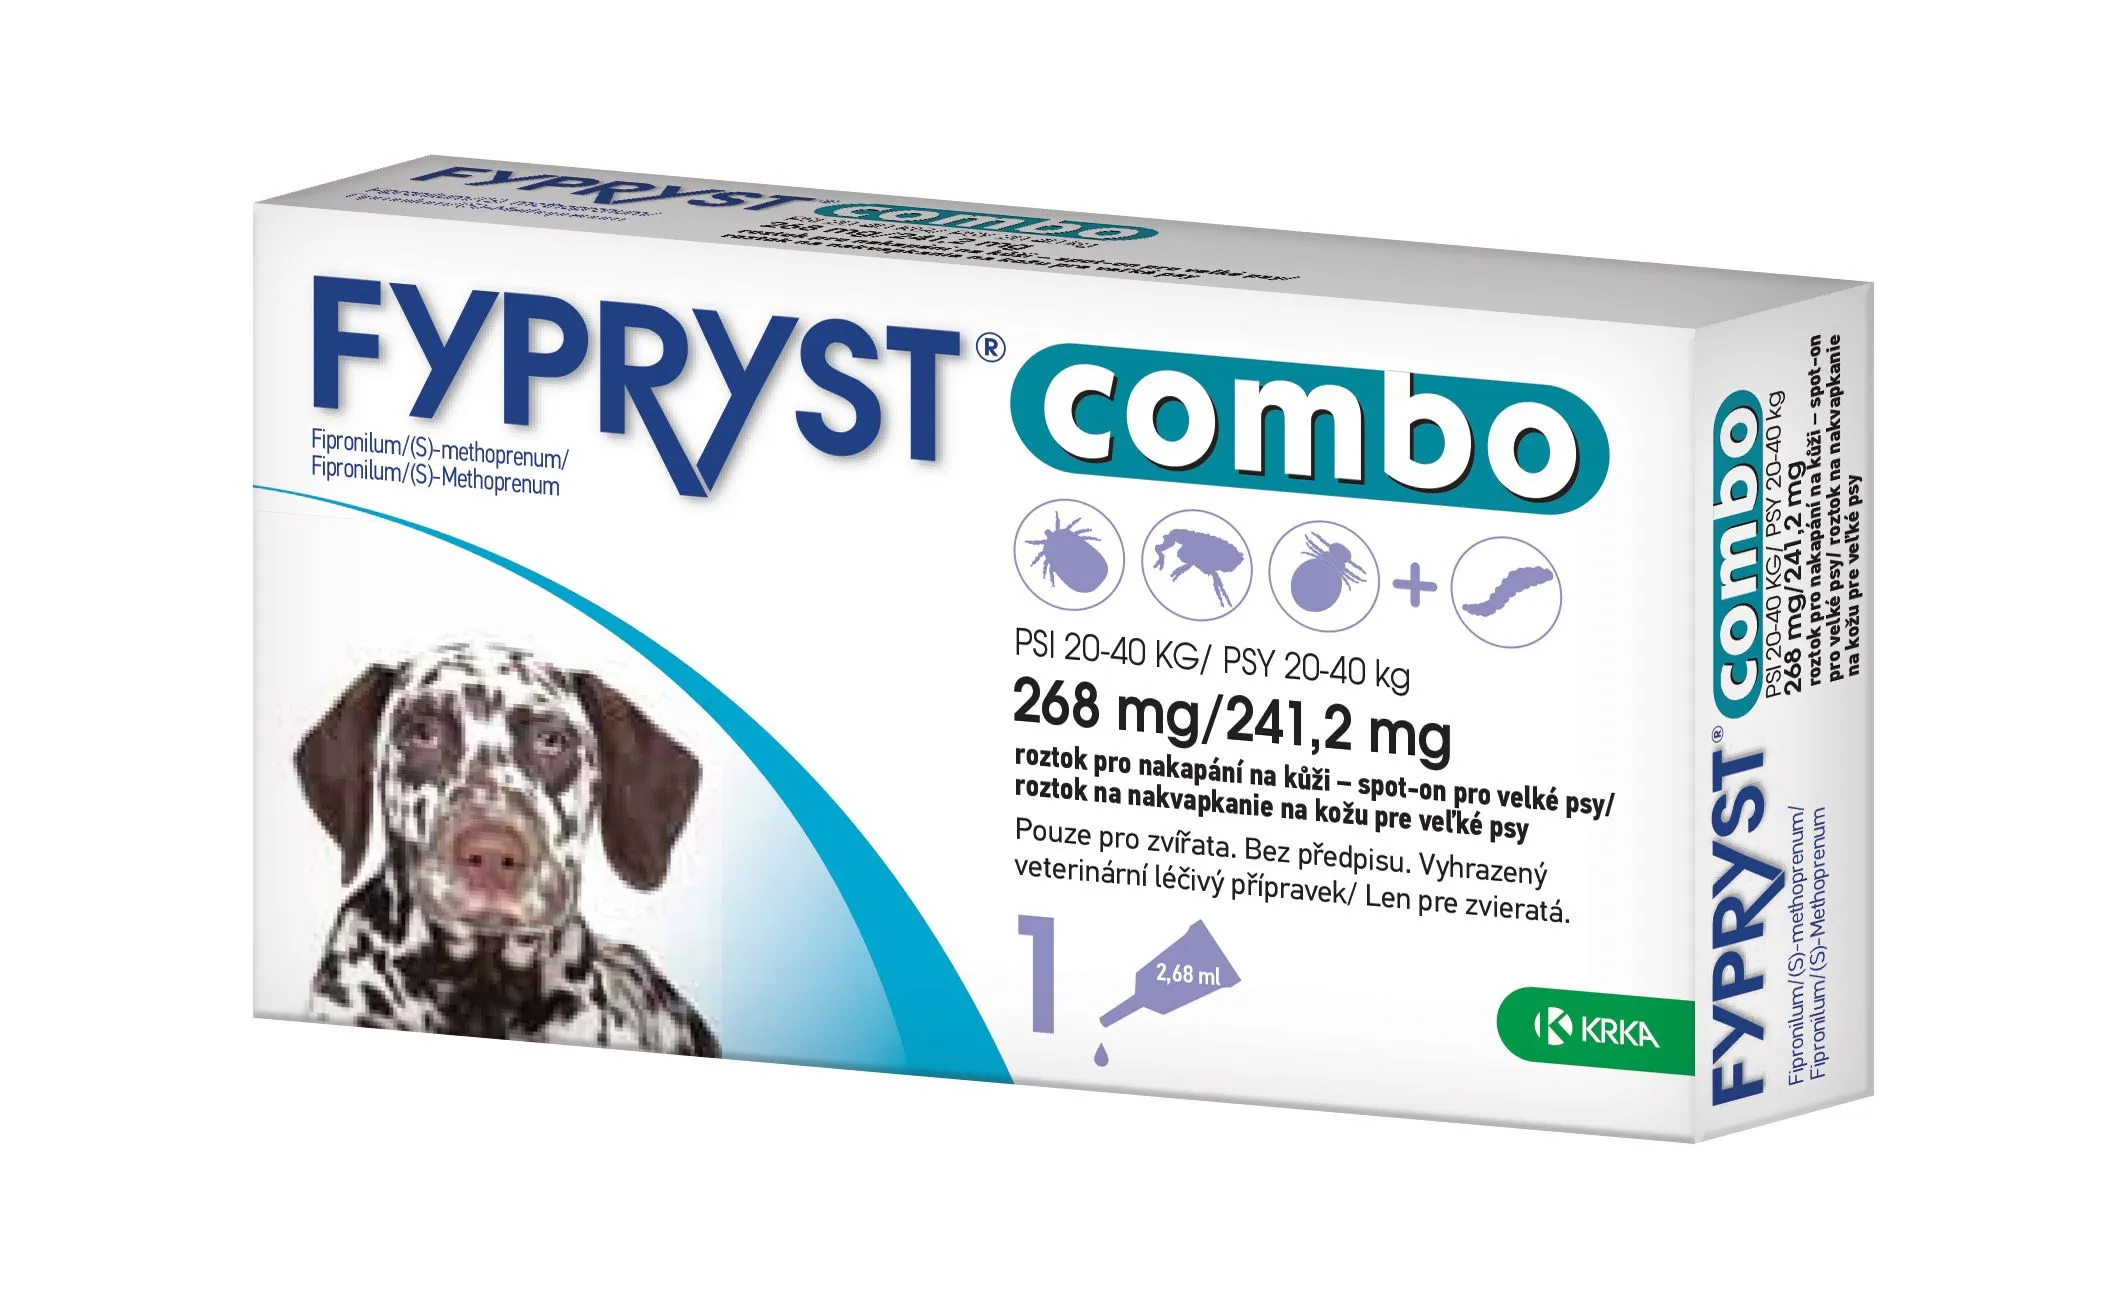 Fypryst Combo spot-on pro velké psy 20-40 kg 268 mg/241,2 mg